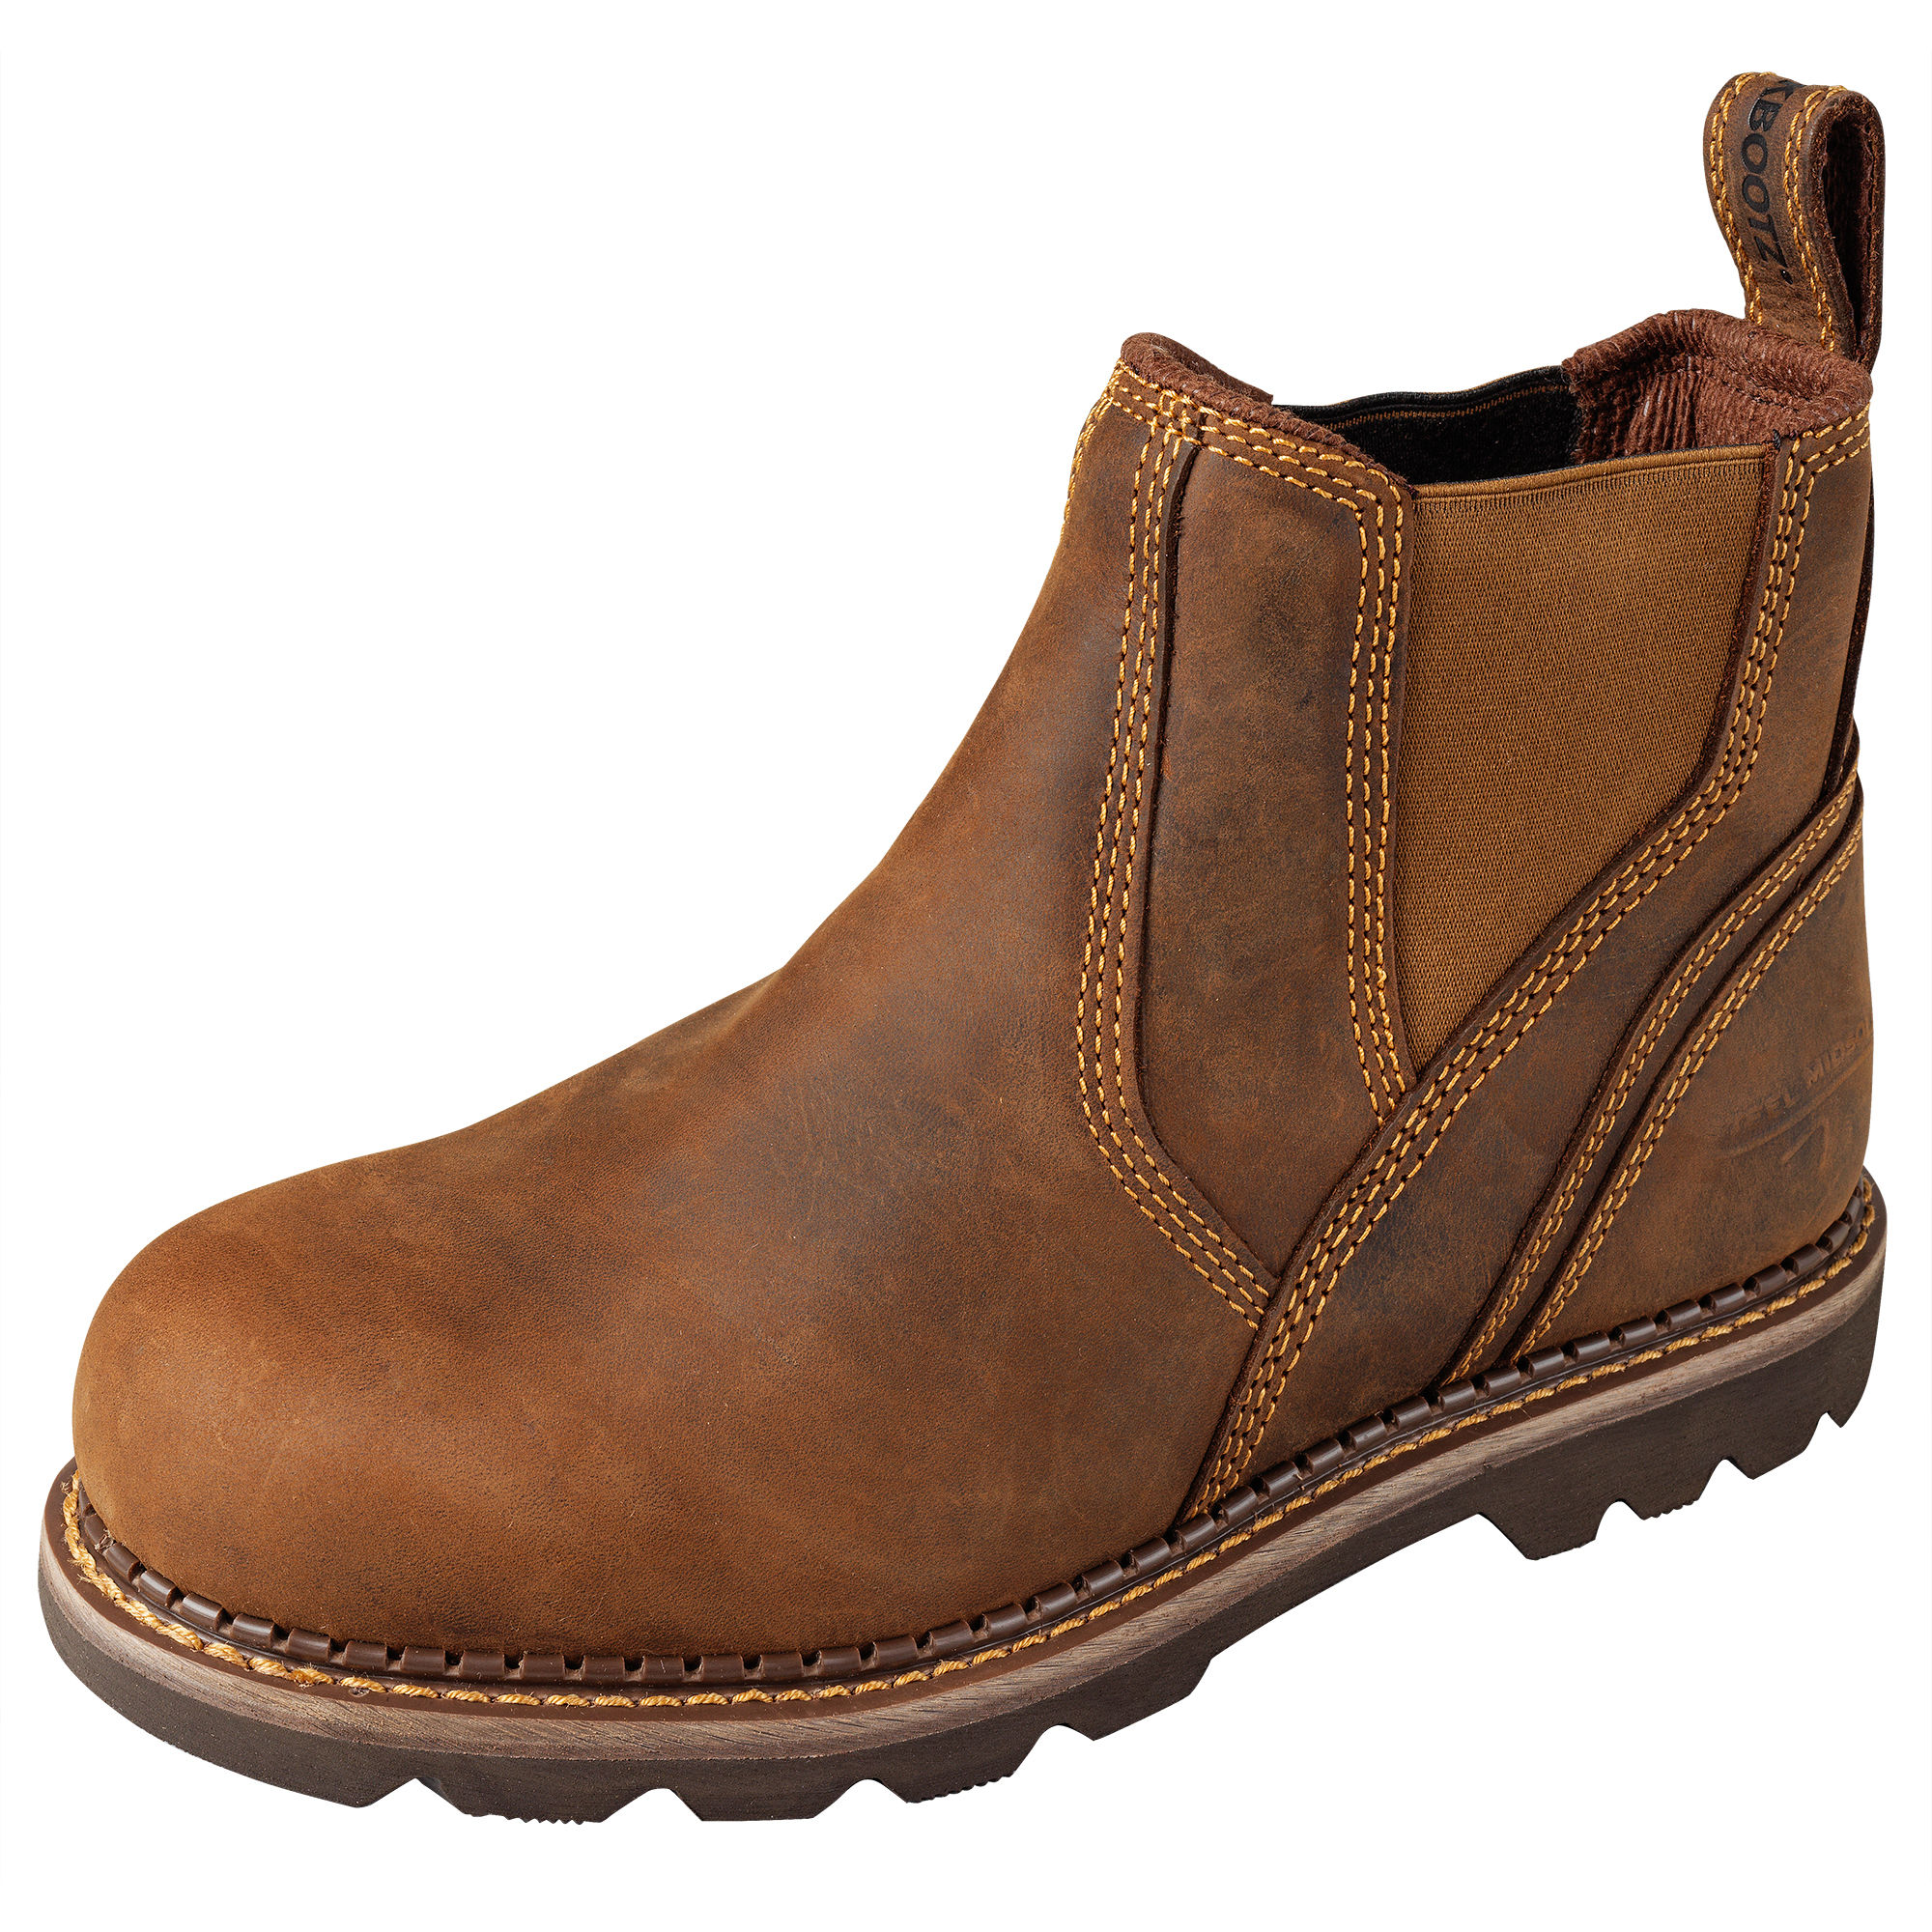 Buckler Steel Toe Safety Dealer Boots Light Brown - B1555SM